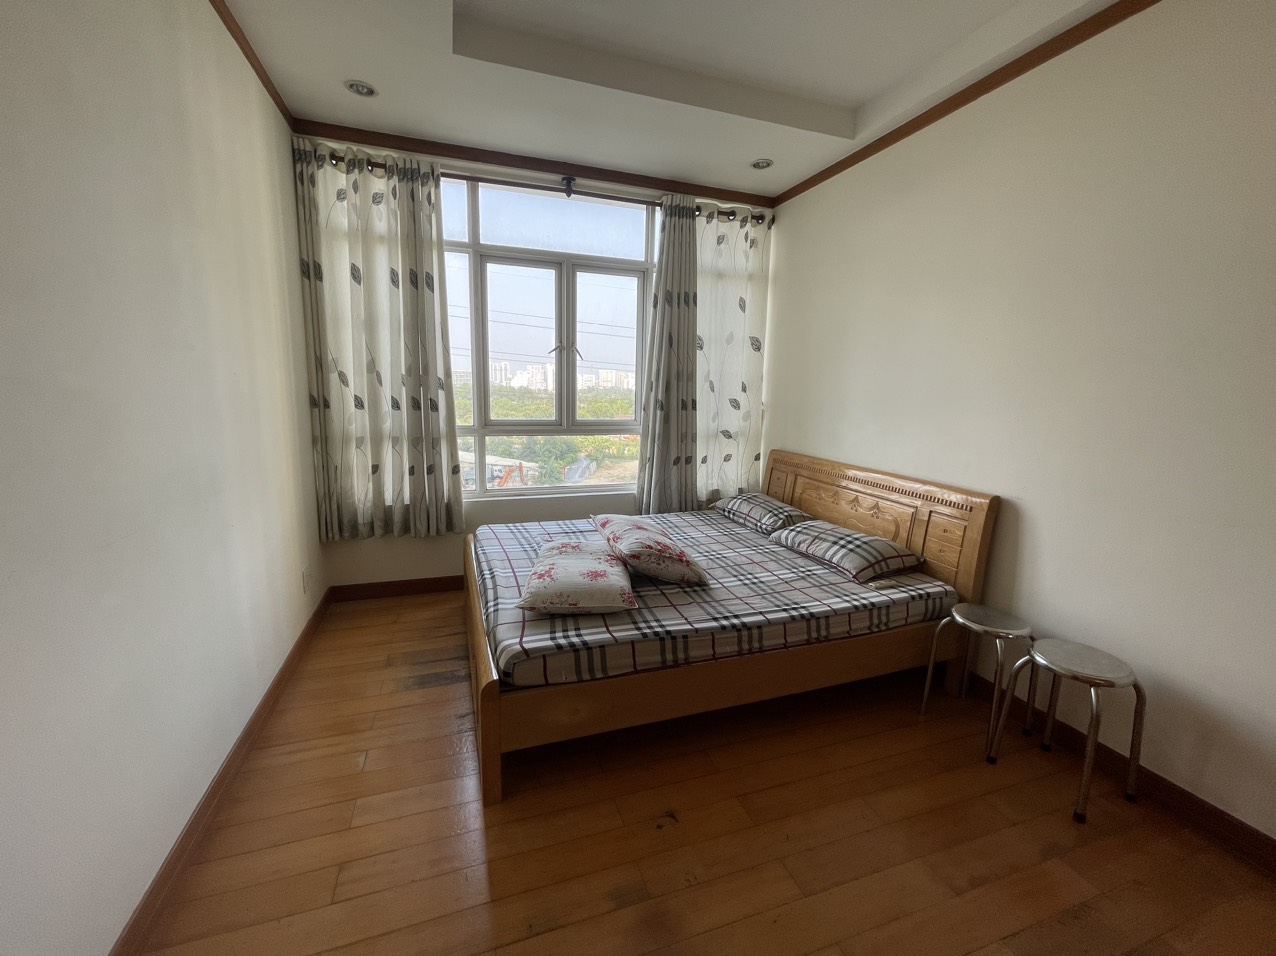 Chính chủ cần cho thuê căn hộ 3PN tại chung cư Phú Hoàng Anh, Phước Kiển, Nhà Bè Giá 12tr/ tháng đầy đủ nội thất